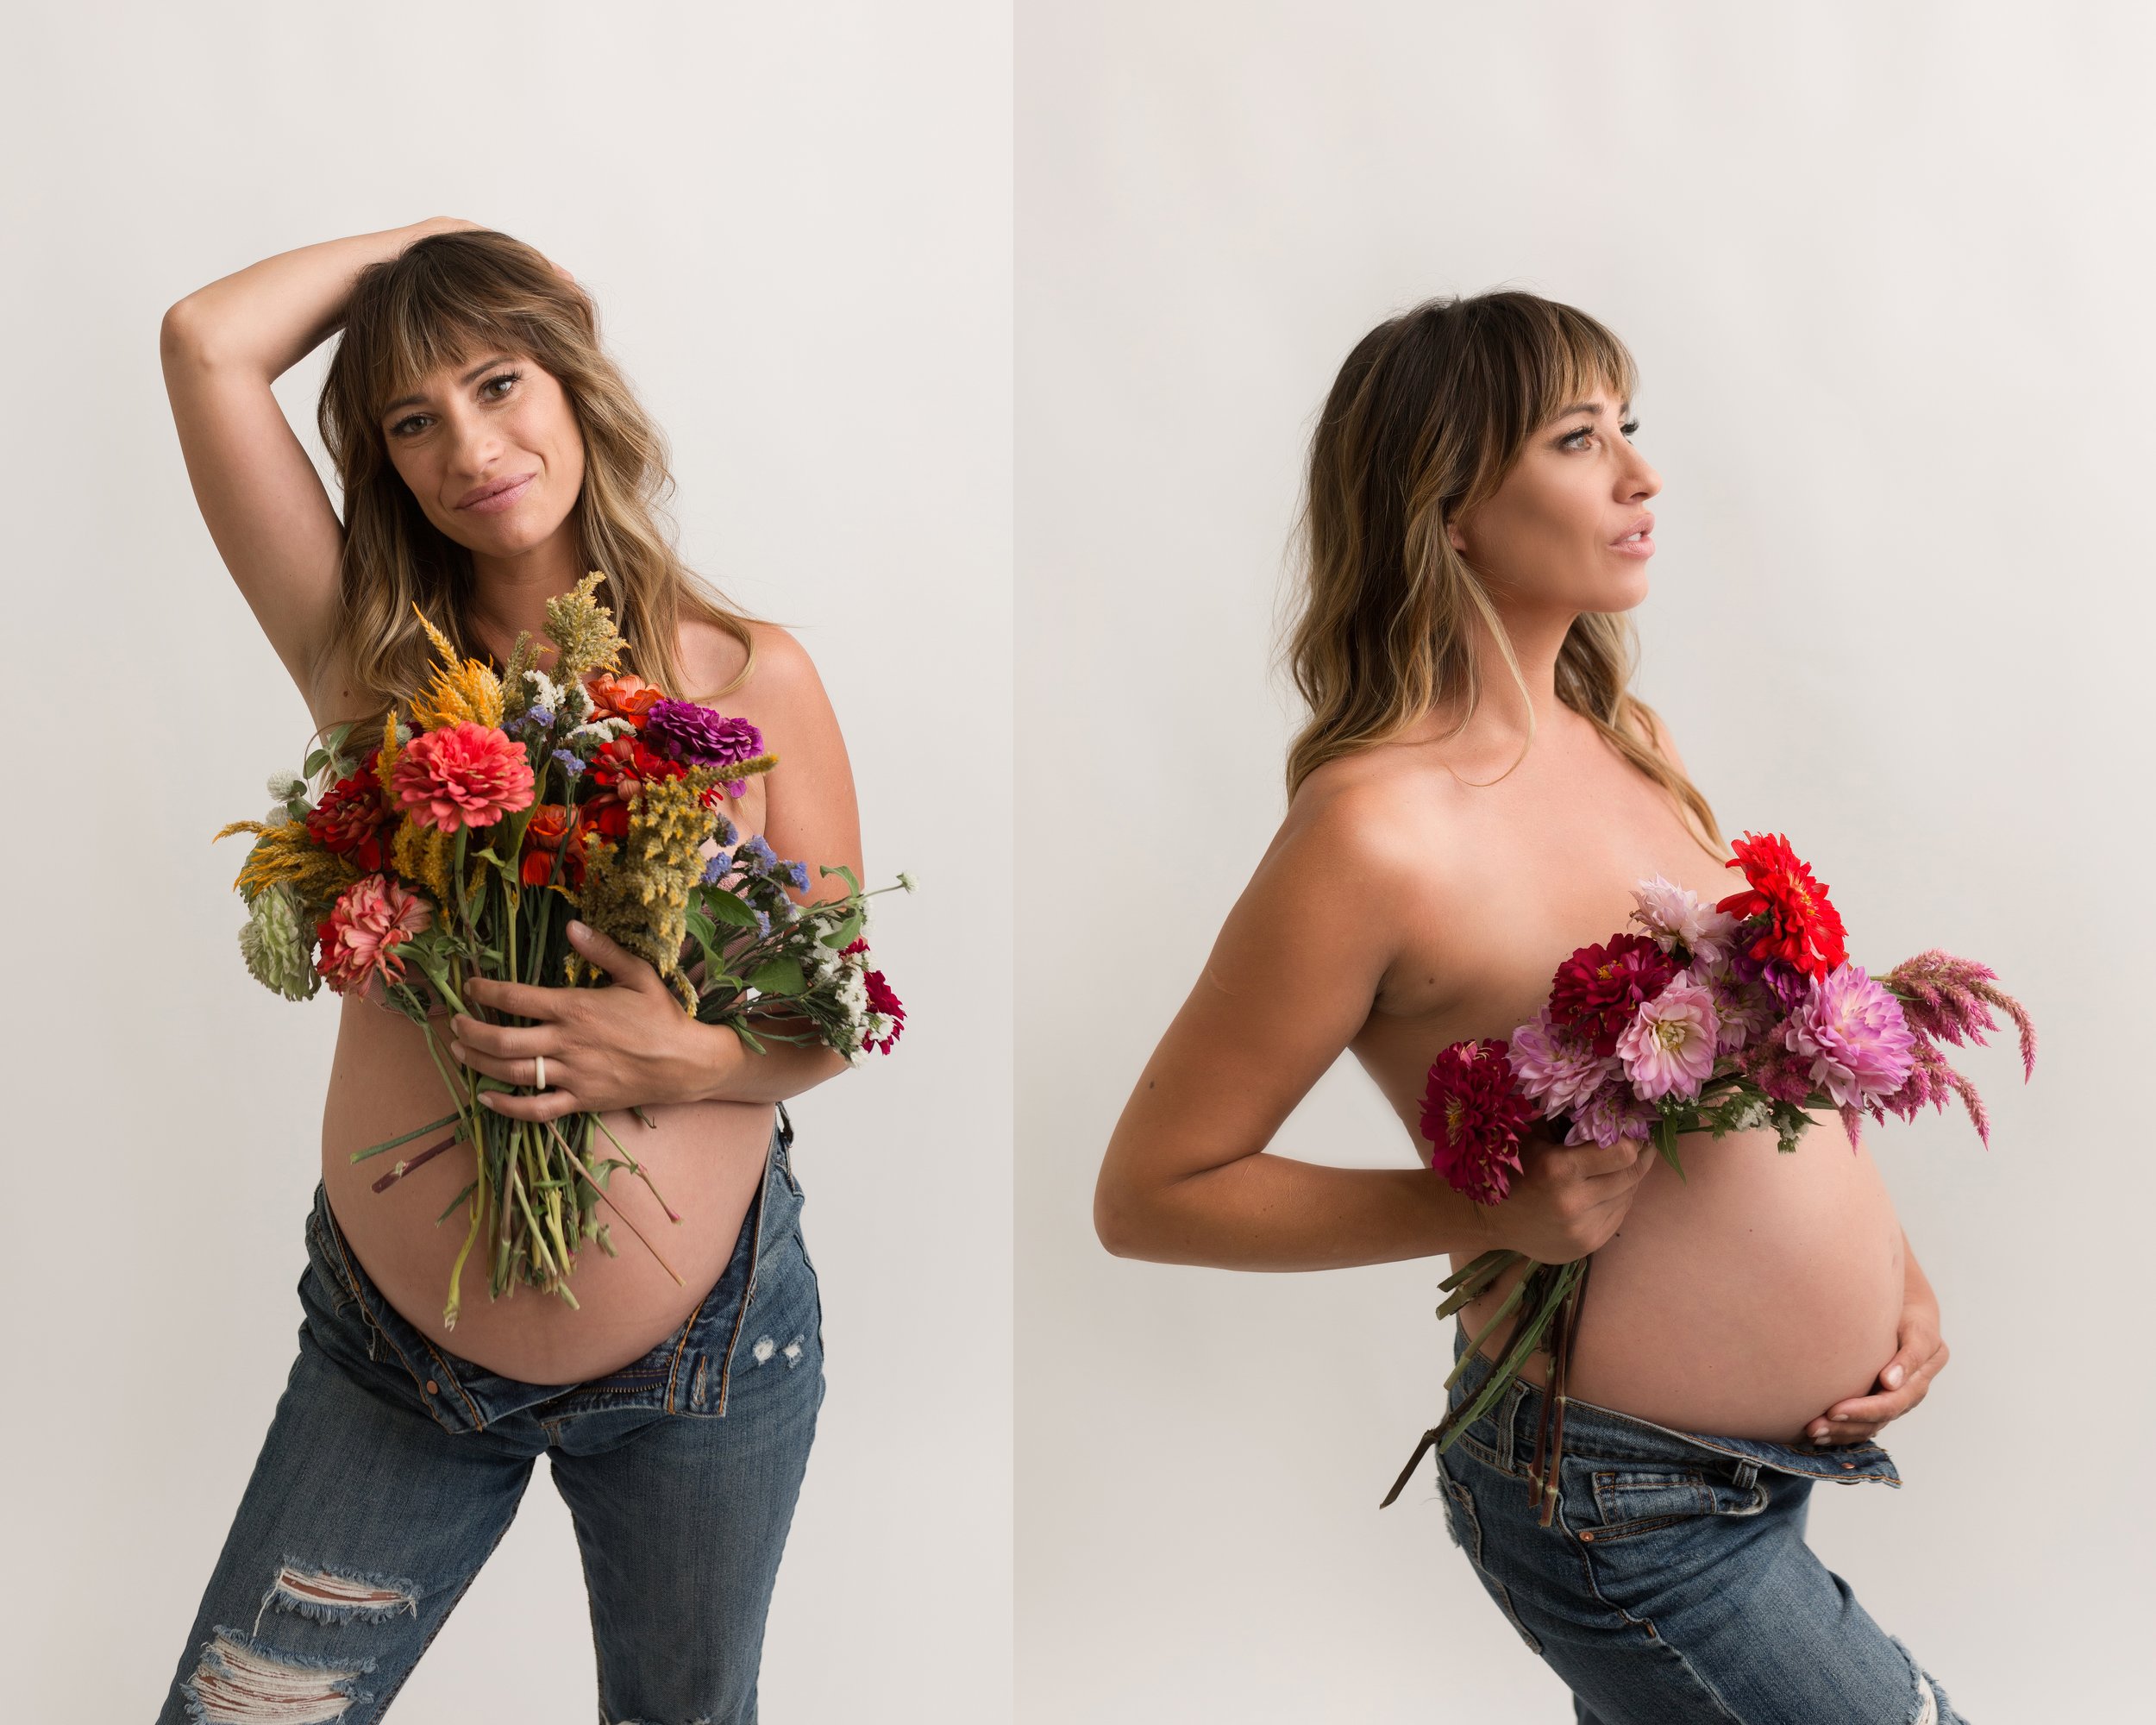 Maternitysessionwithflowers.jpg